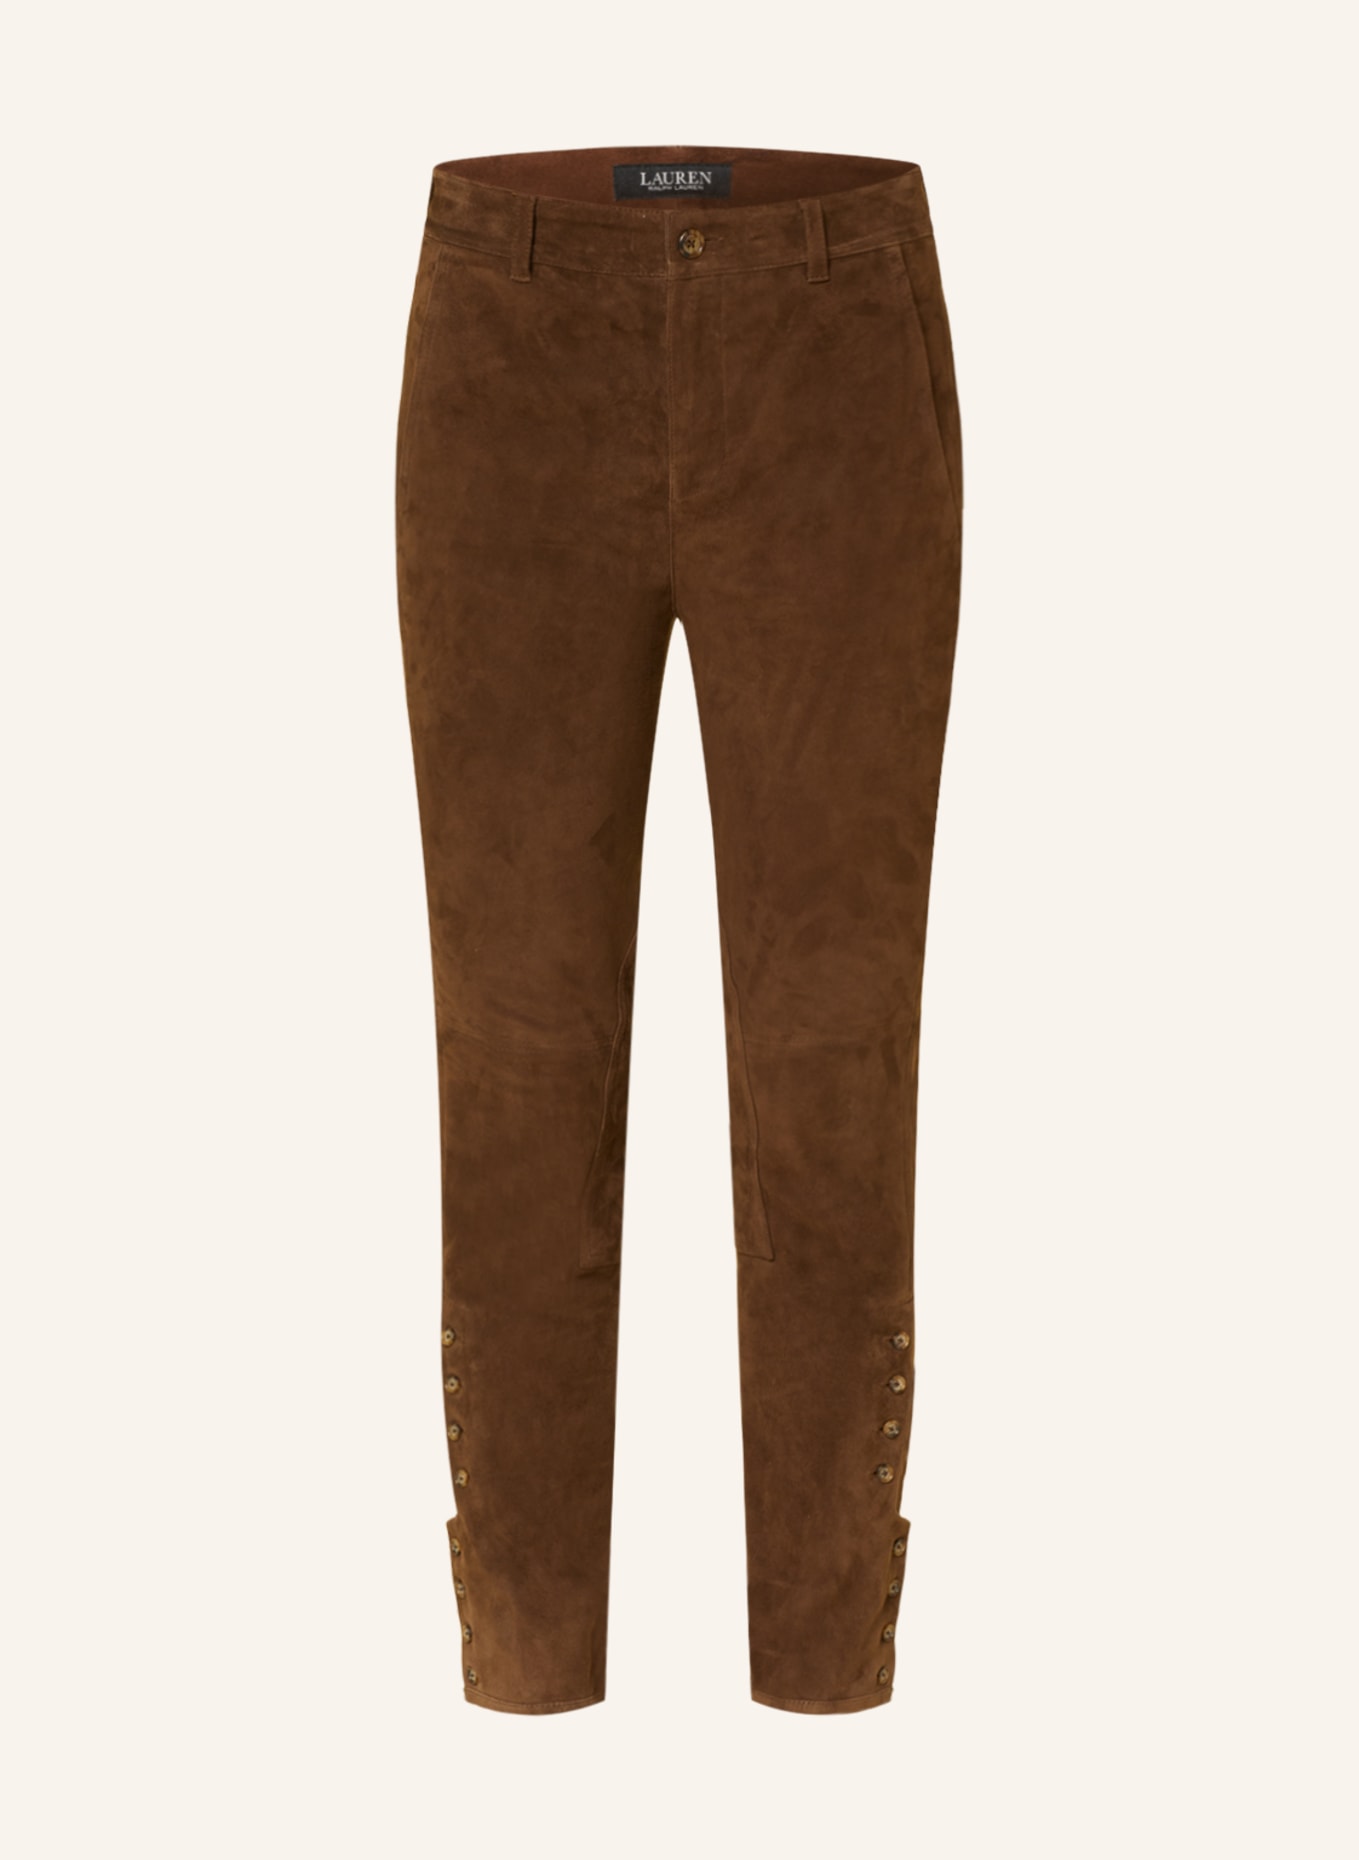 LAUREN RALPH LAUREN Leather trousers, Color: BROWN (Image 1)